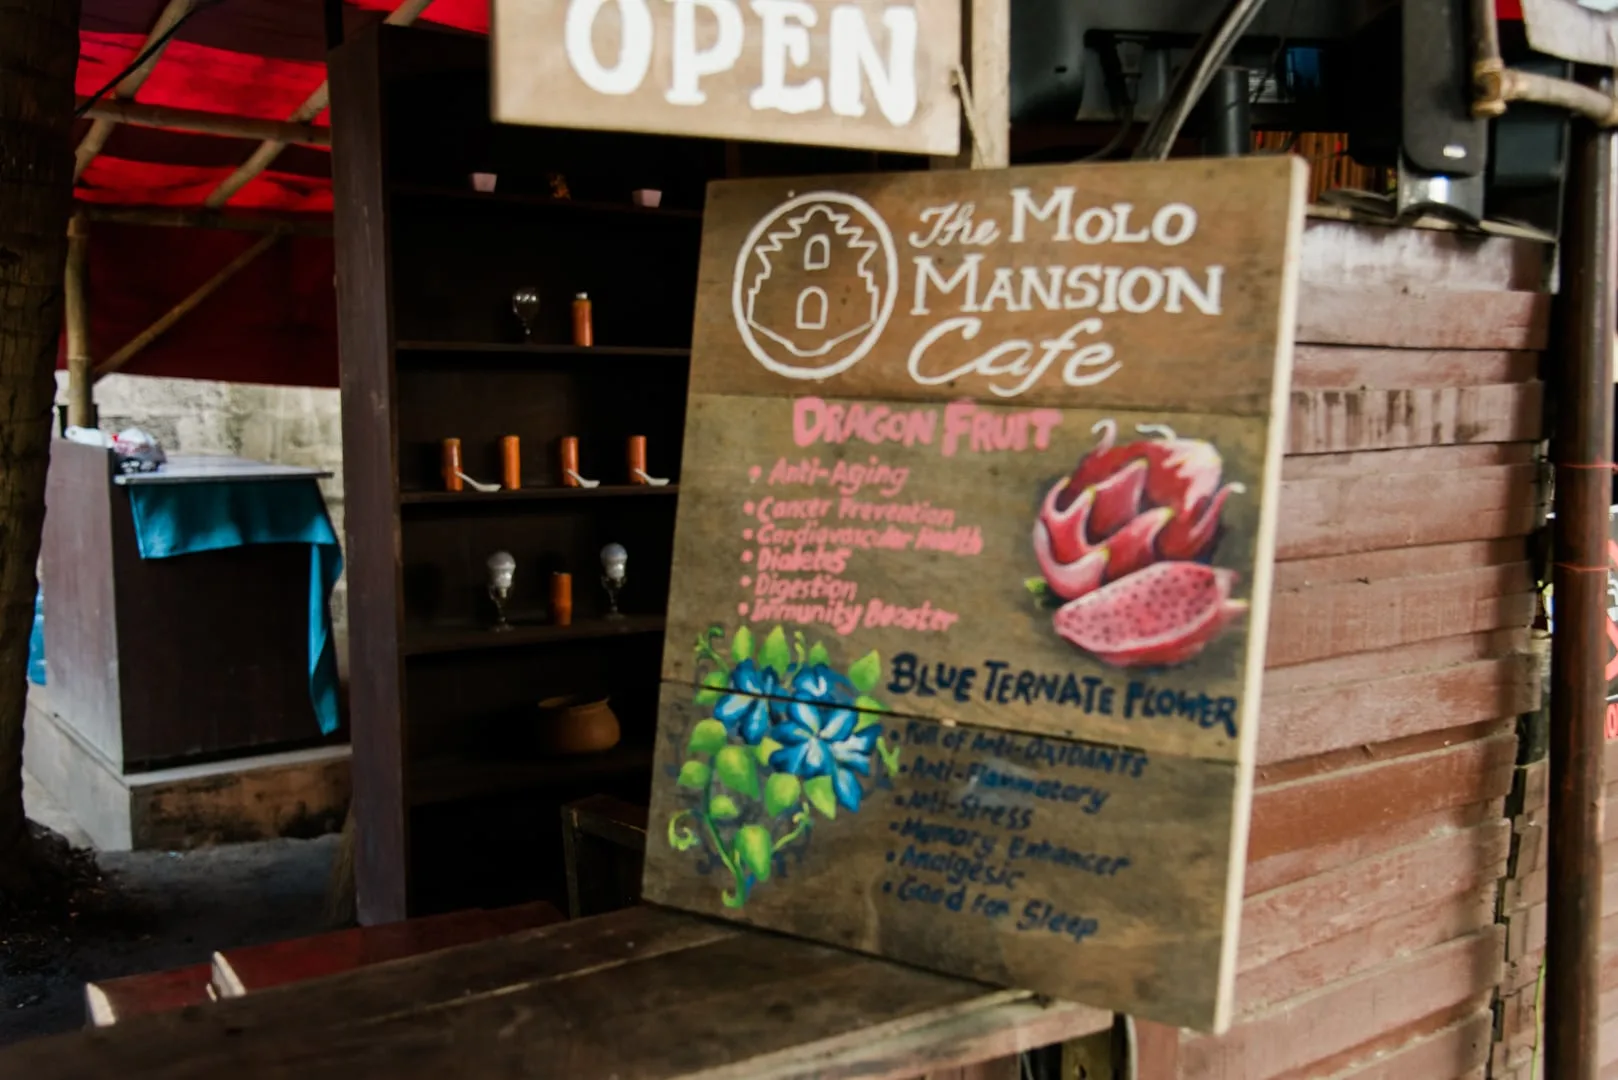 things to do in iloilo, iloilo tourist spots, what to do in iloilo, where to stay in iloilo, what to eat in iloilo, iloilo itinerary, iloilo city travel guide, Molo Mansion, Molo Mansion Cafe